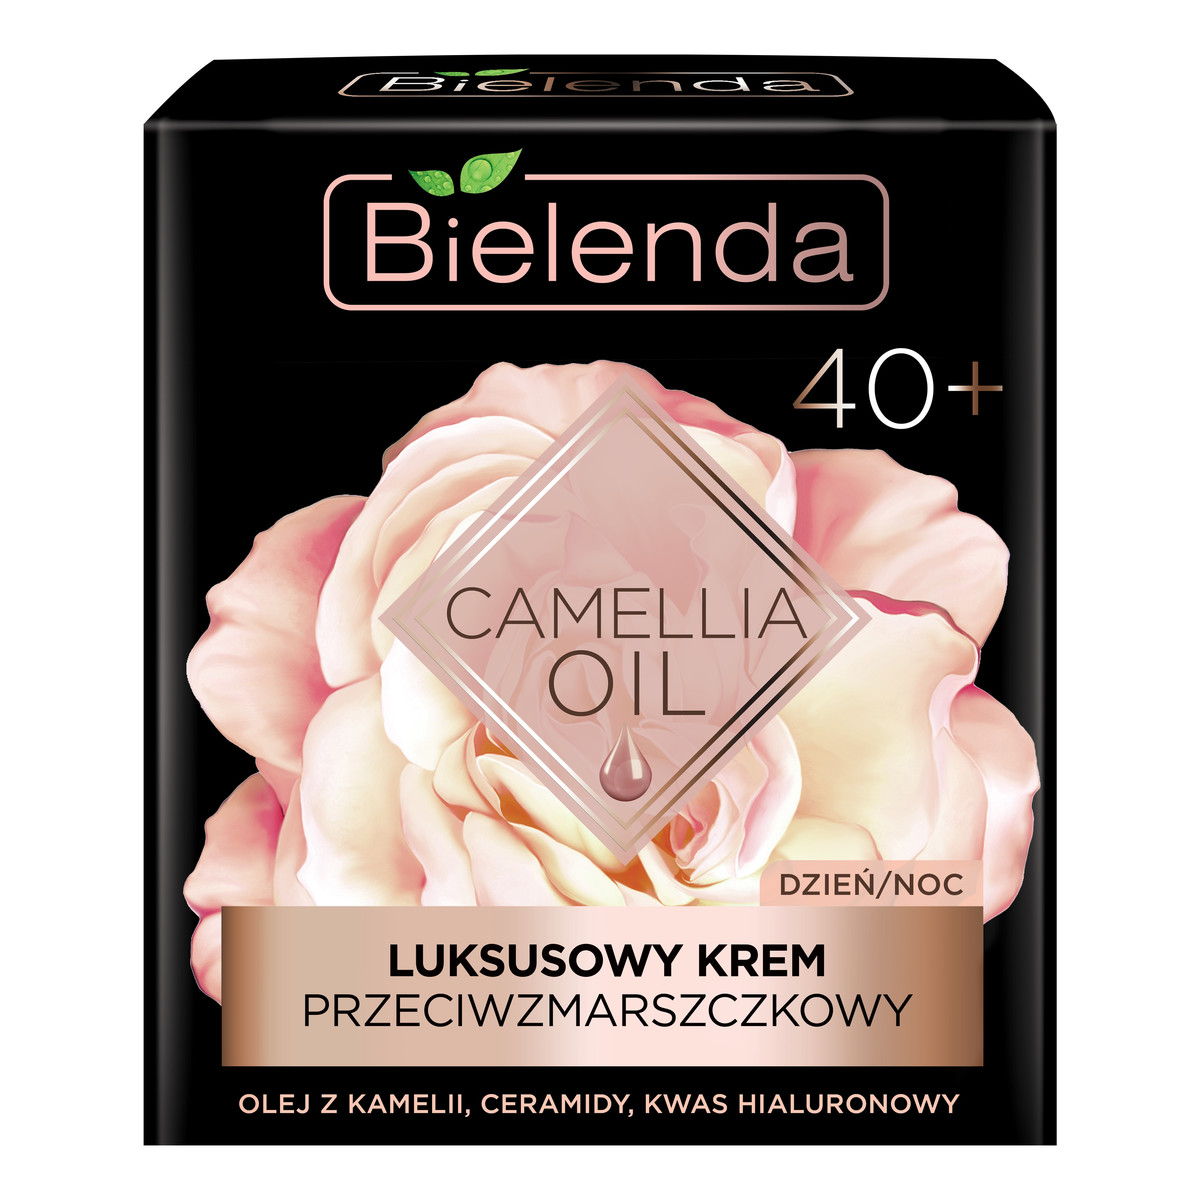 Bielenda Camellia Oil 40+ Luksusowy Krem przeciwzmarszczkowy na dzień i noc 50ml